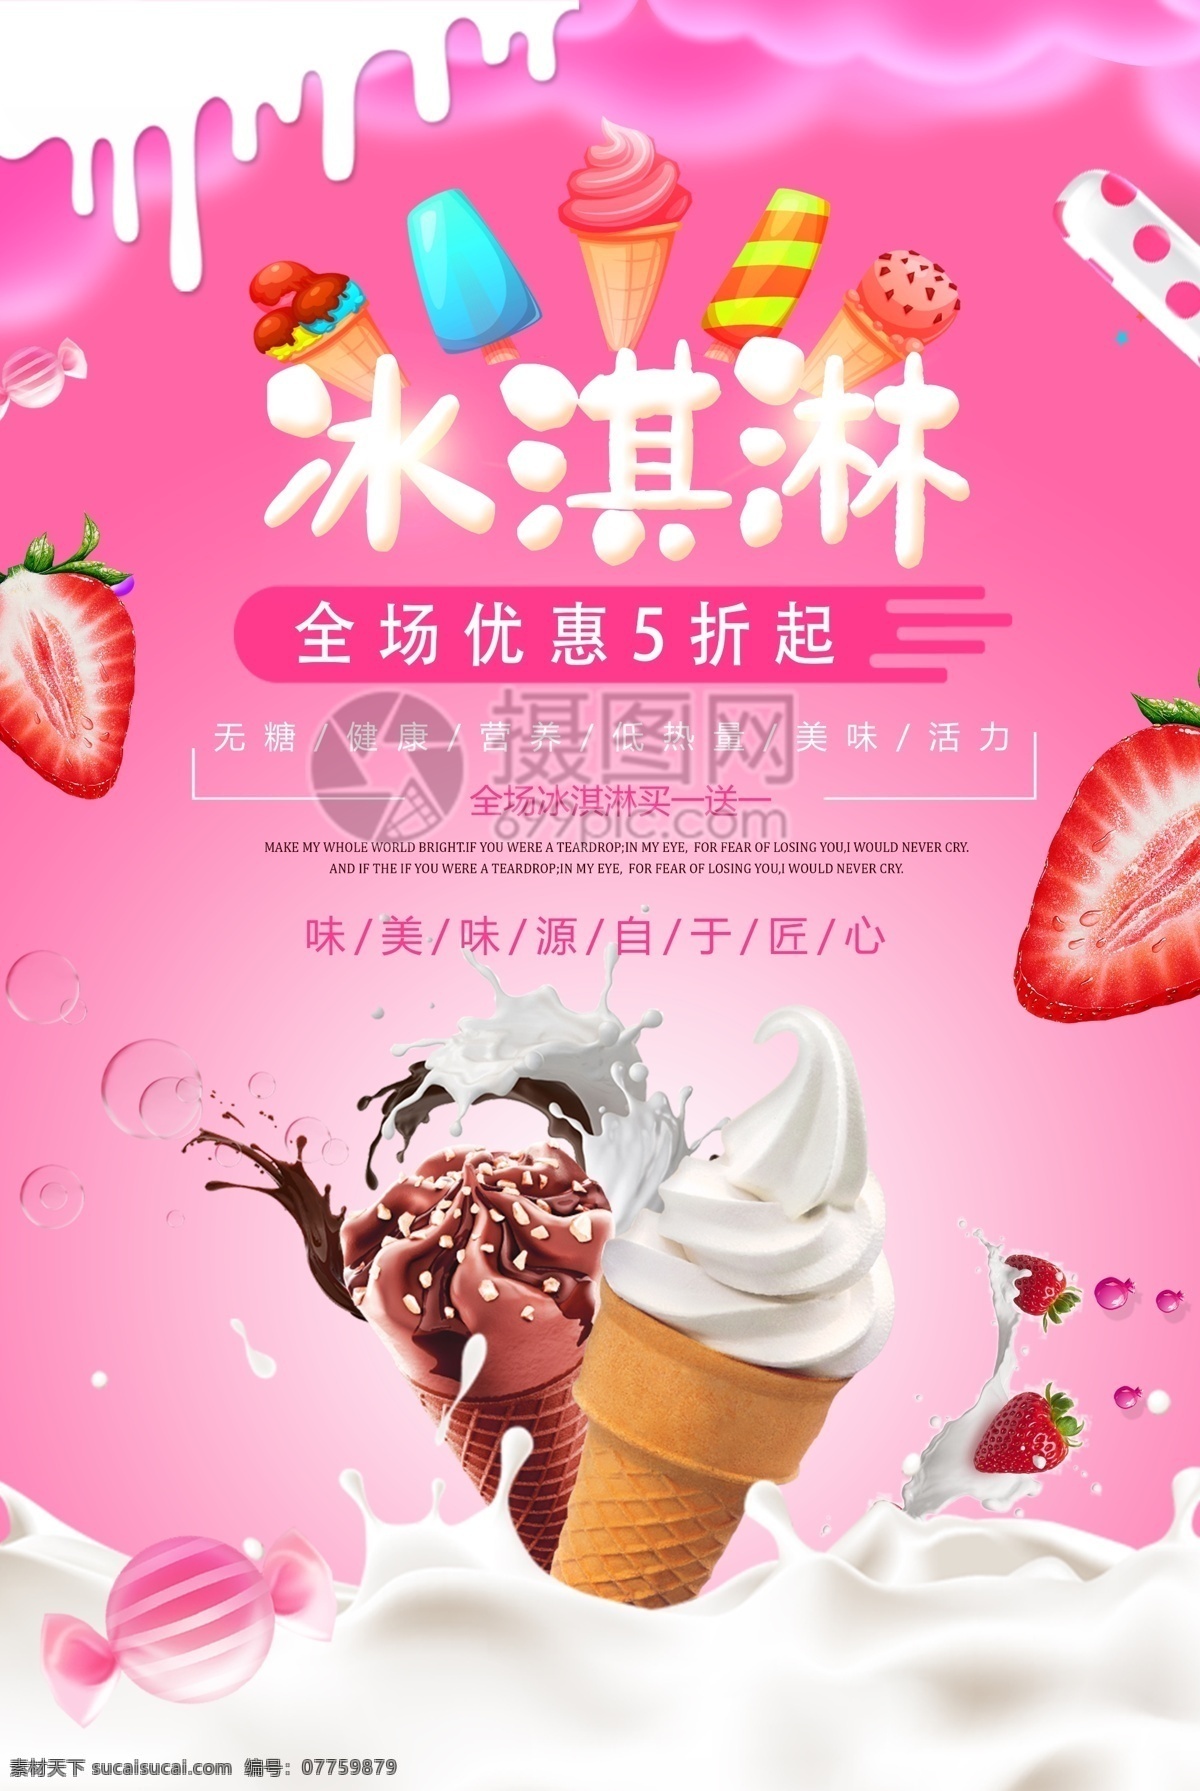 夏日 美食 冰淇淋 海报 冰激凌 雪糕 美食餐饮 粉色 甜品 甜点 冷饮